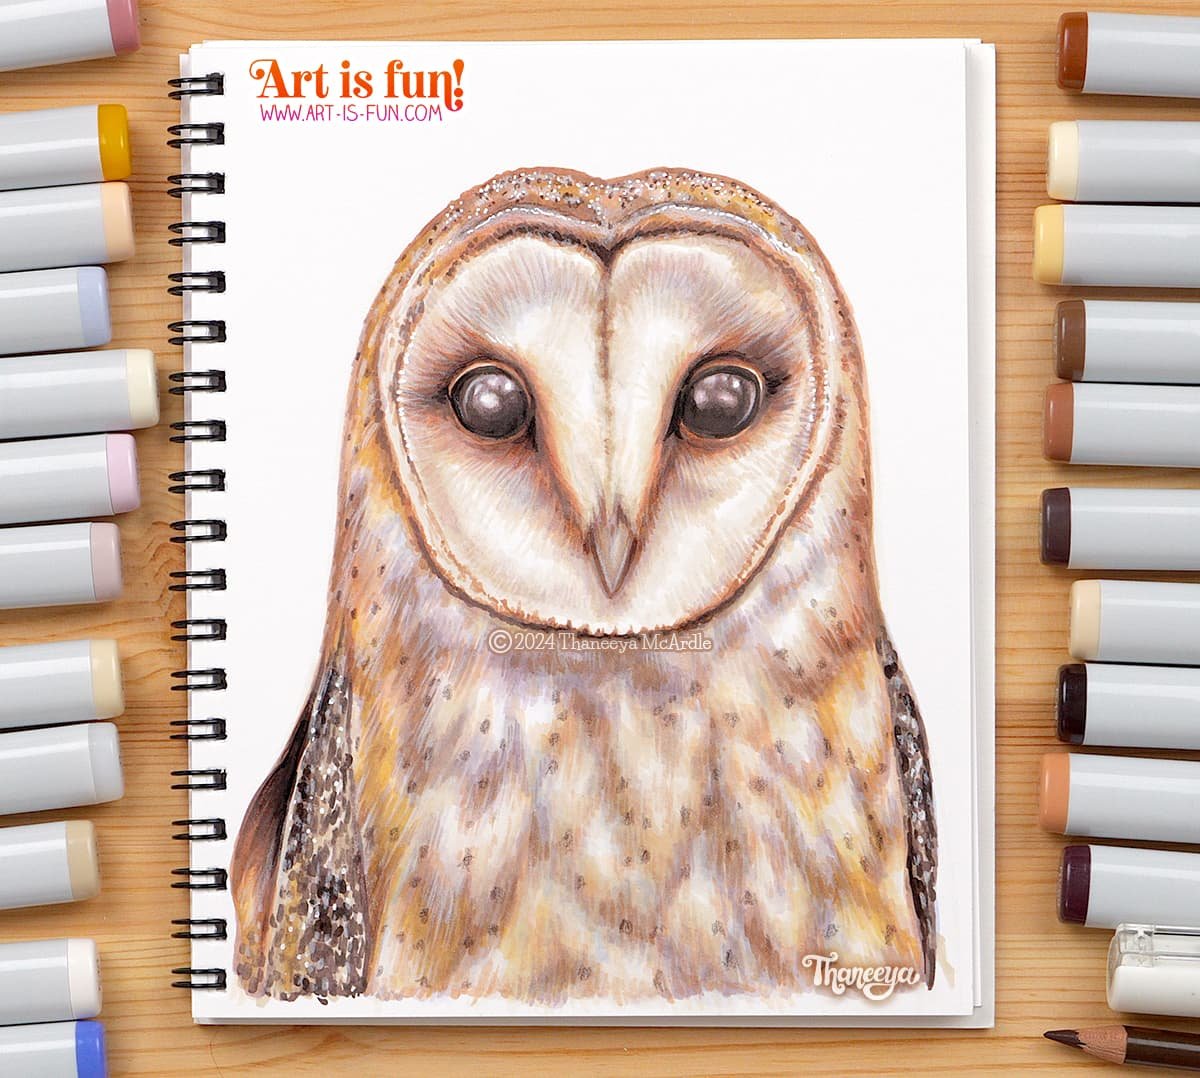 Cute Owl Drawing - Cute Owl - Sticker | TeePublic